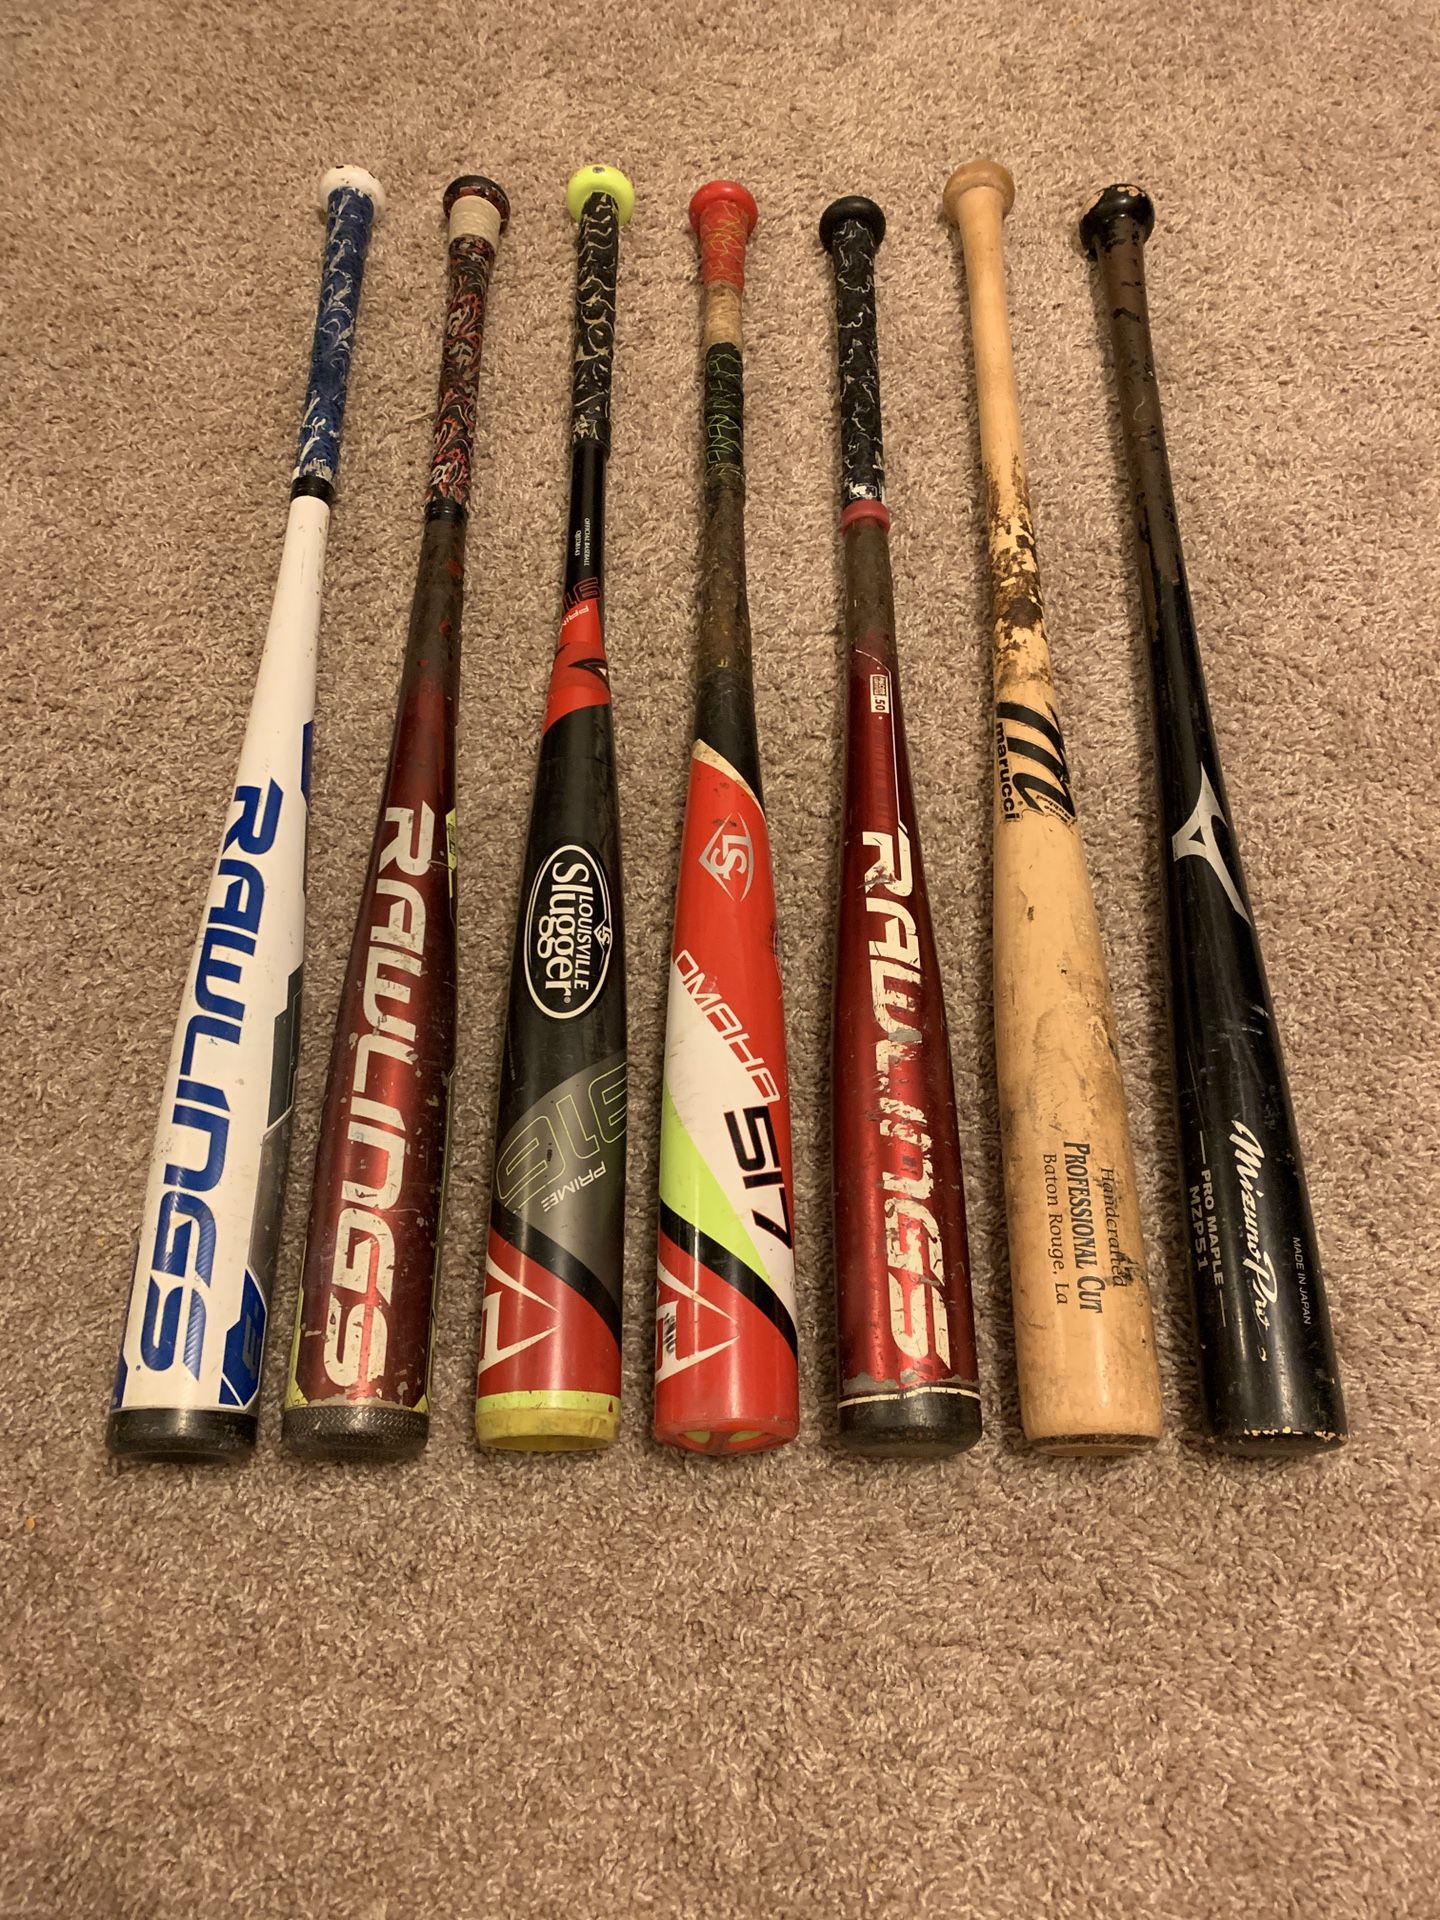 Wood and BBCOR Baseball Bats